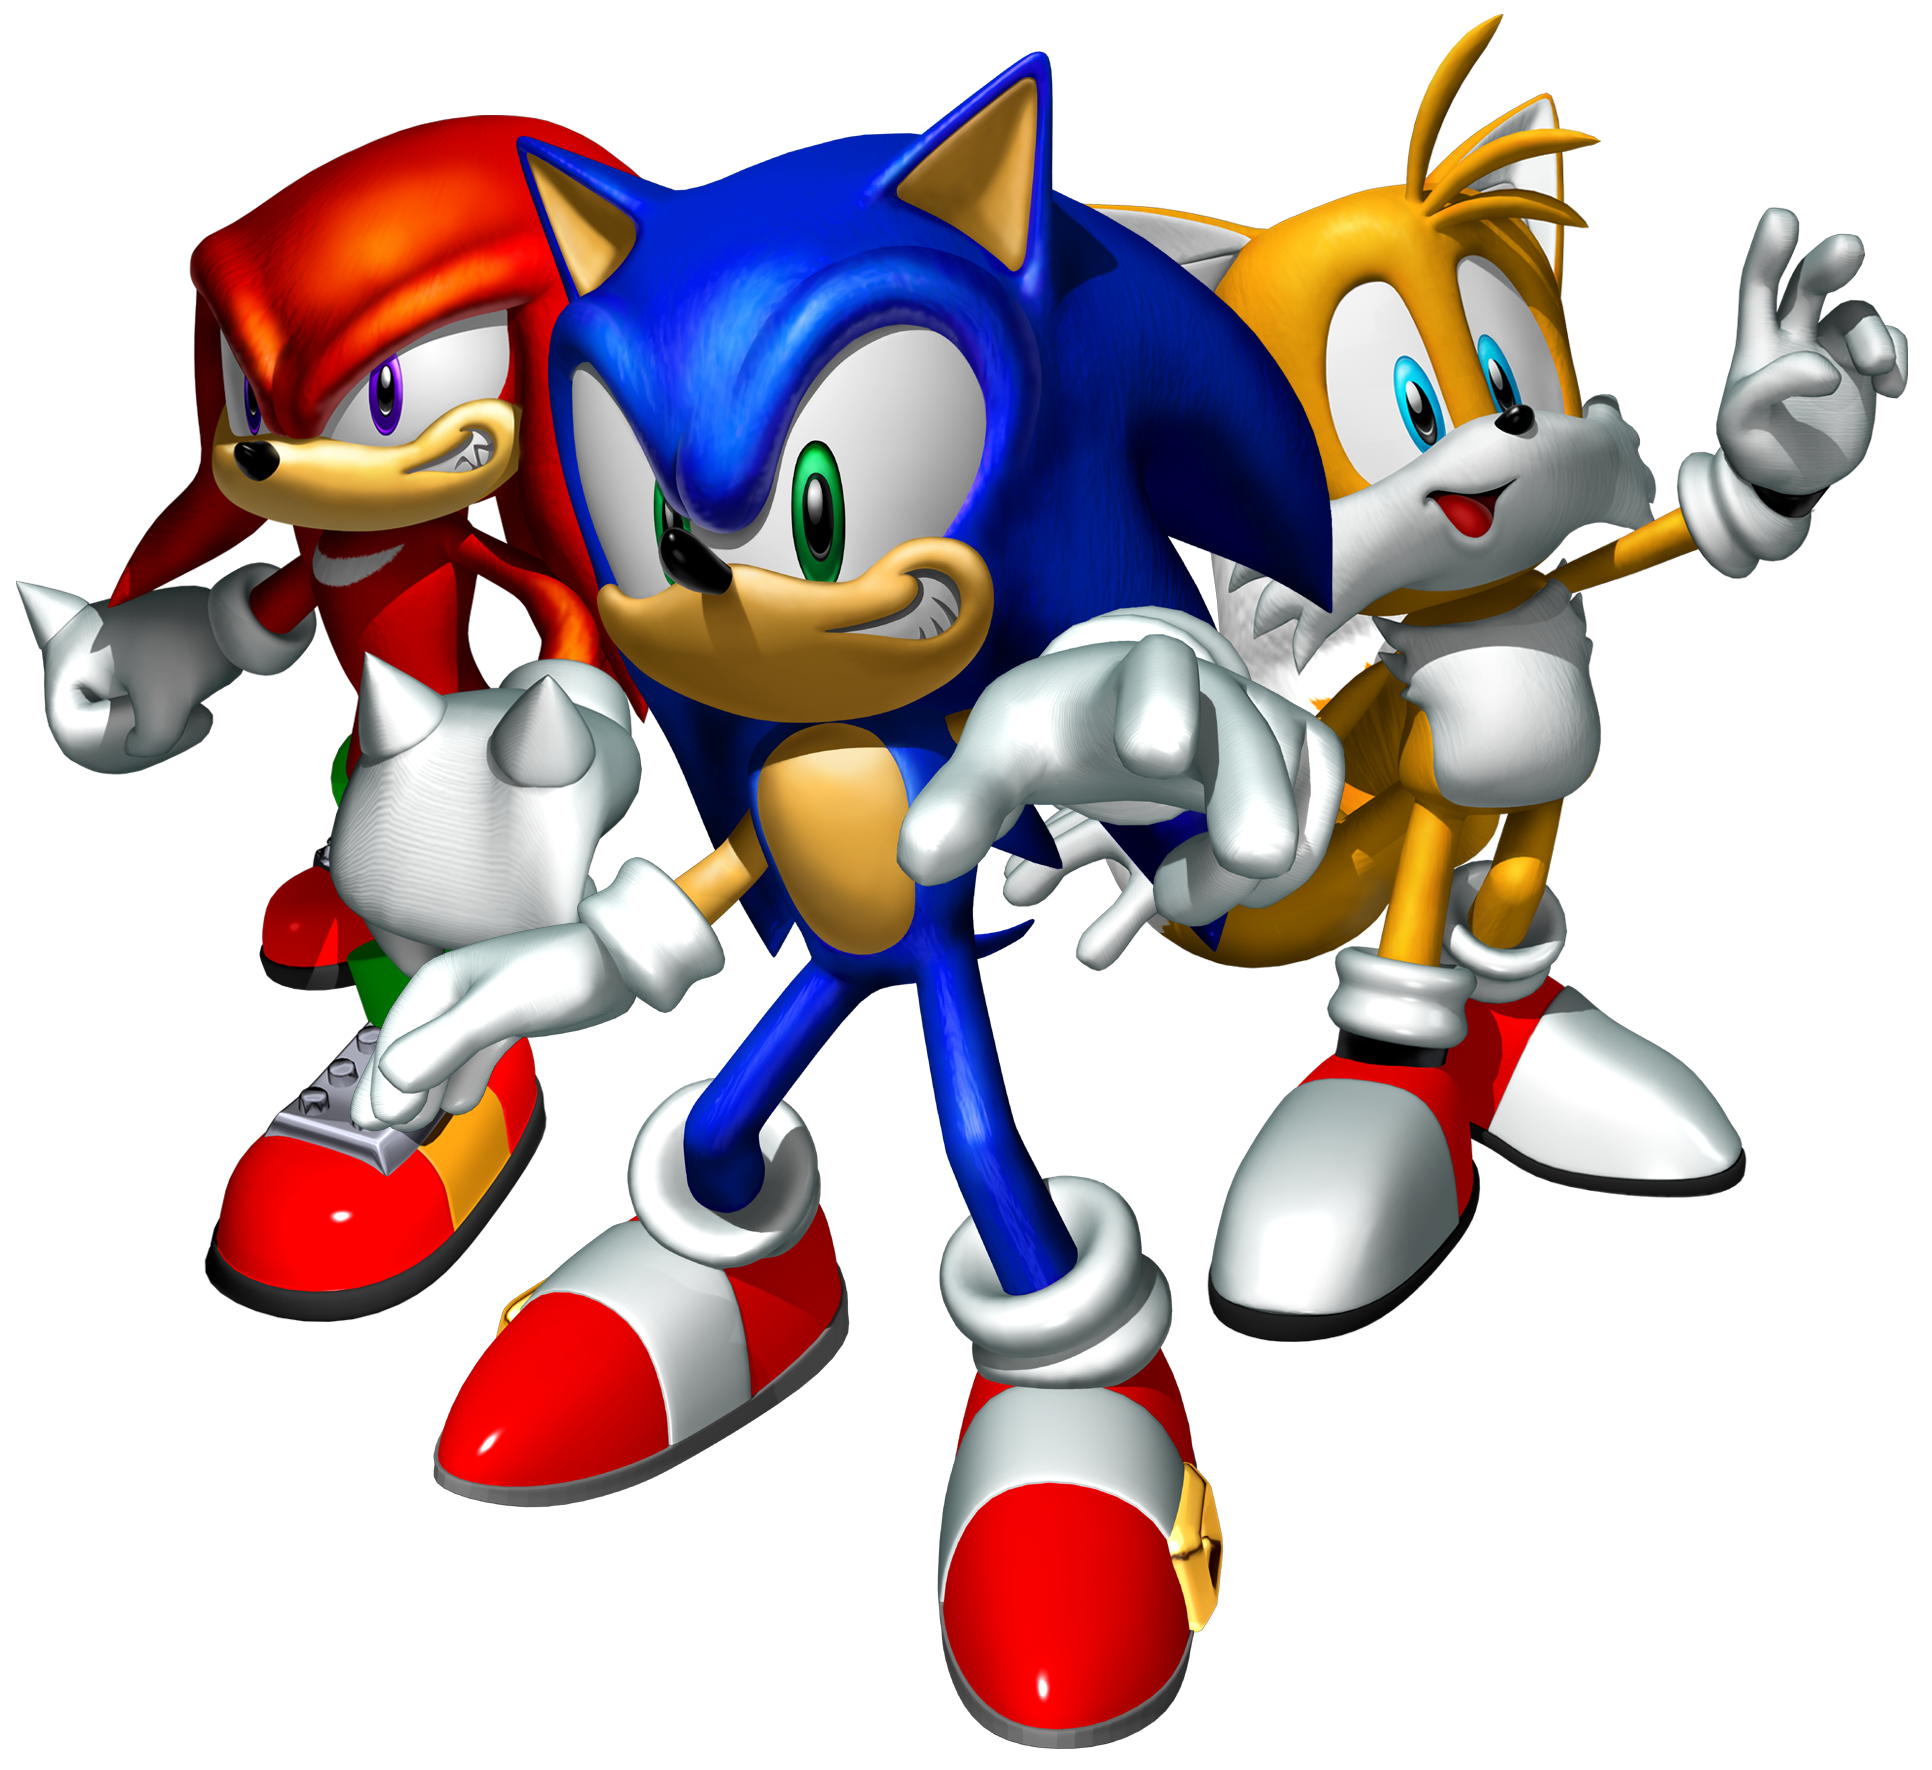 Sonic Heroes - Download